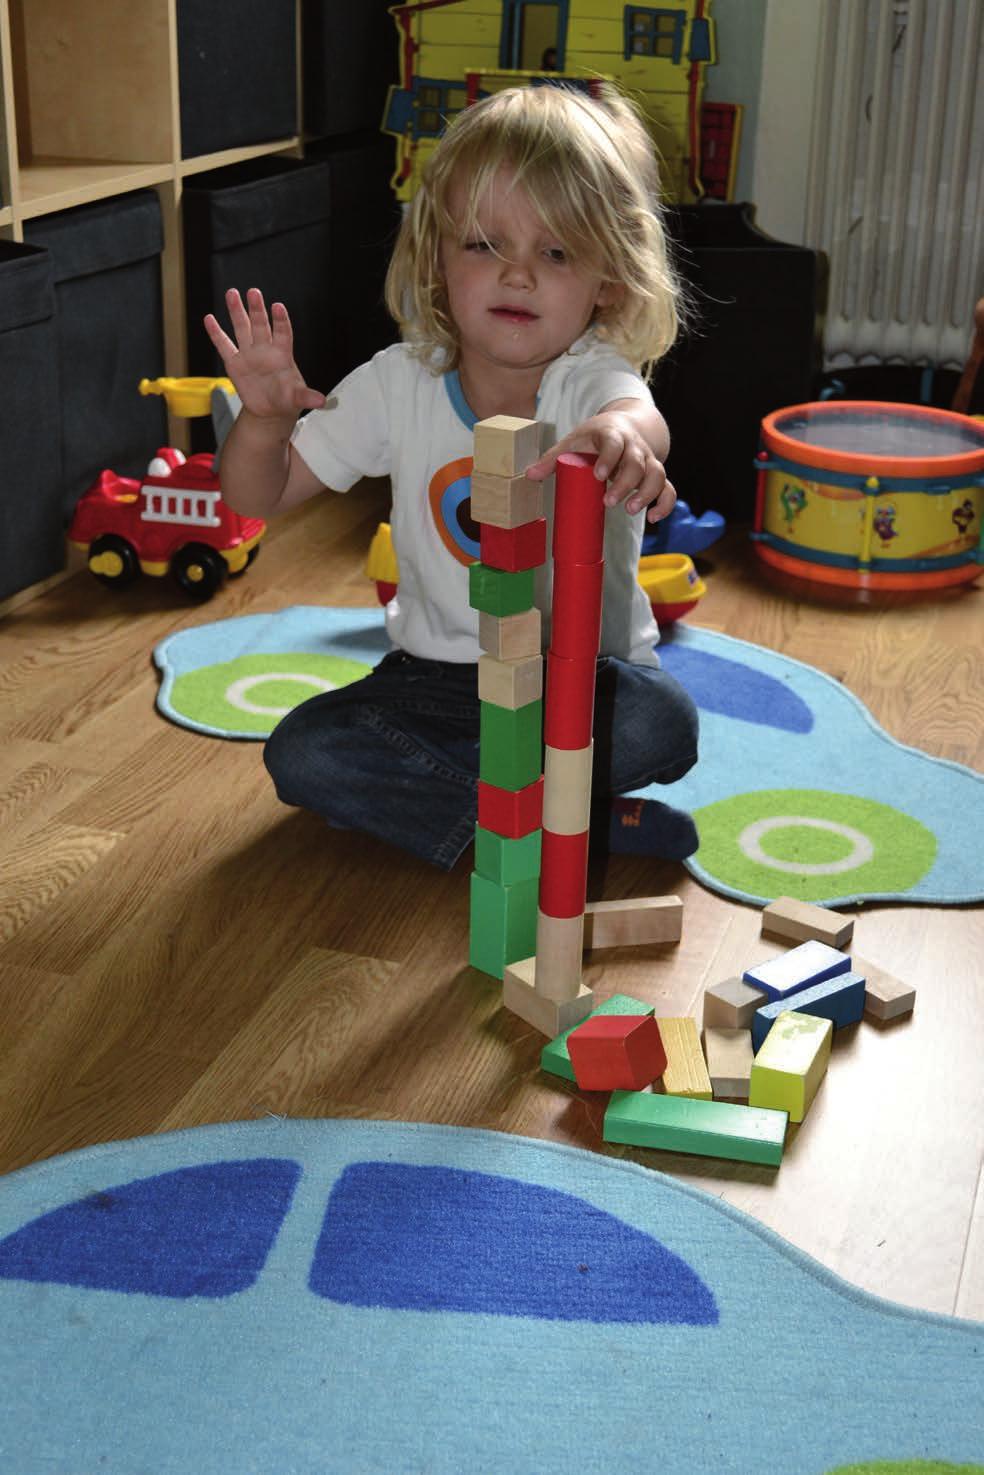 Leon leker en stund med sina klossar och bygger sedan två torn. Idag har tornen klossar av olika form och färg.